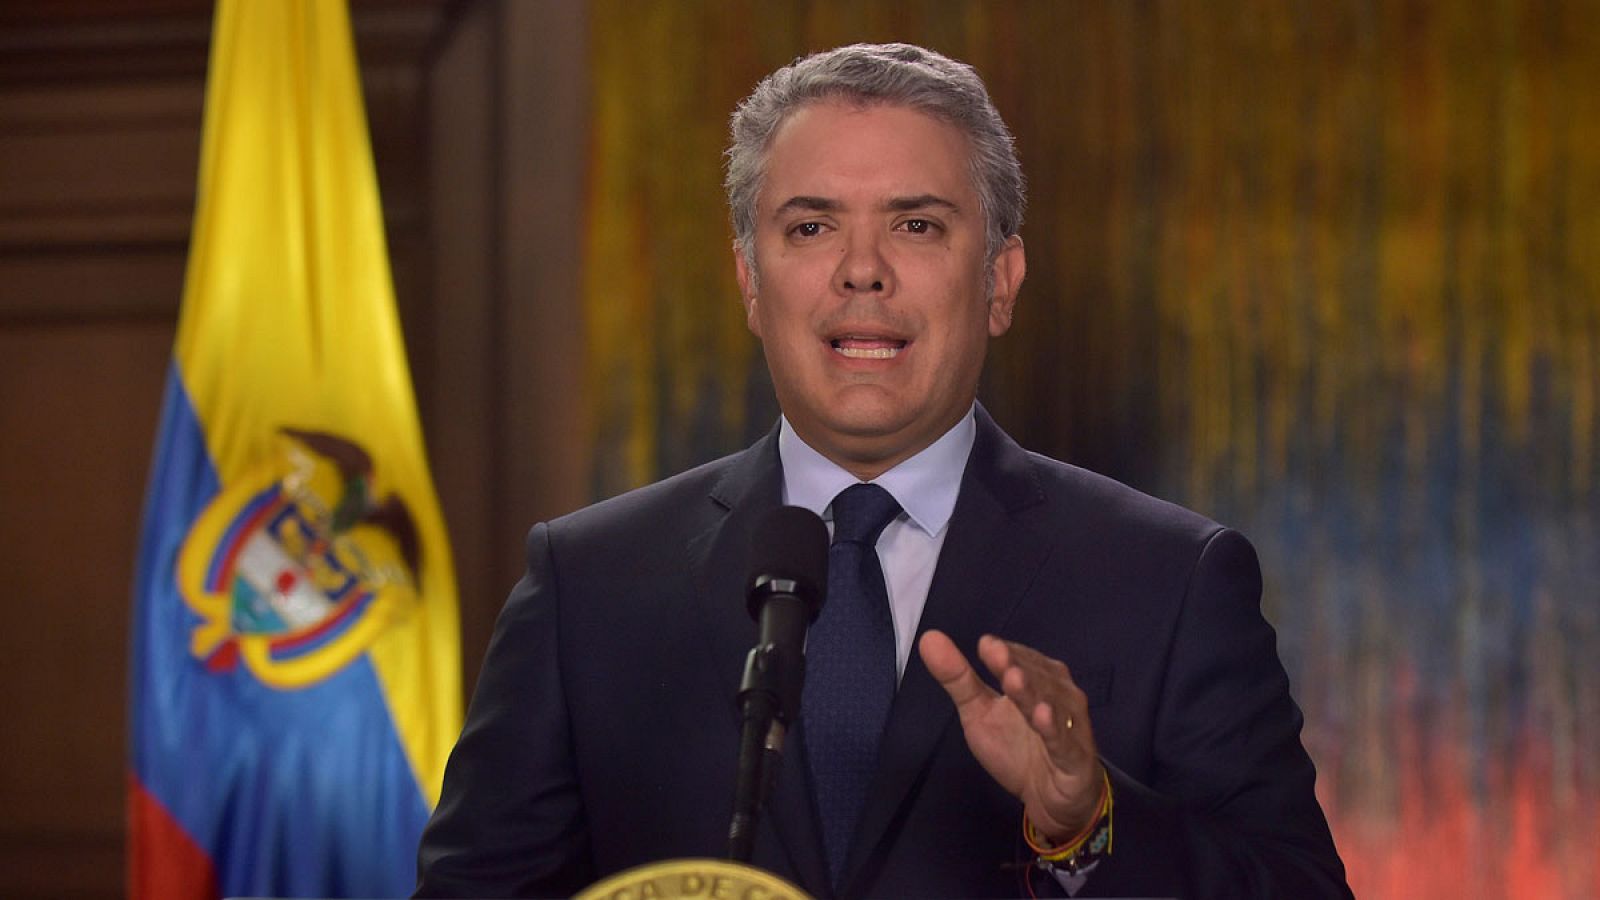 Fotografía cedida por la Presidencia de Colombia, del mandatario, Iván Duque, durante una alocución televisada el 18 de enero de 2019, en Bogotá (Colombia).